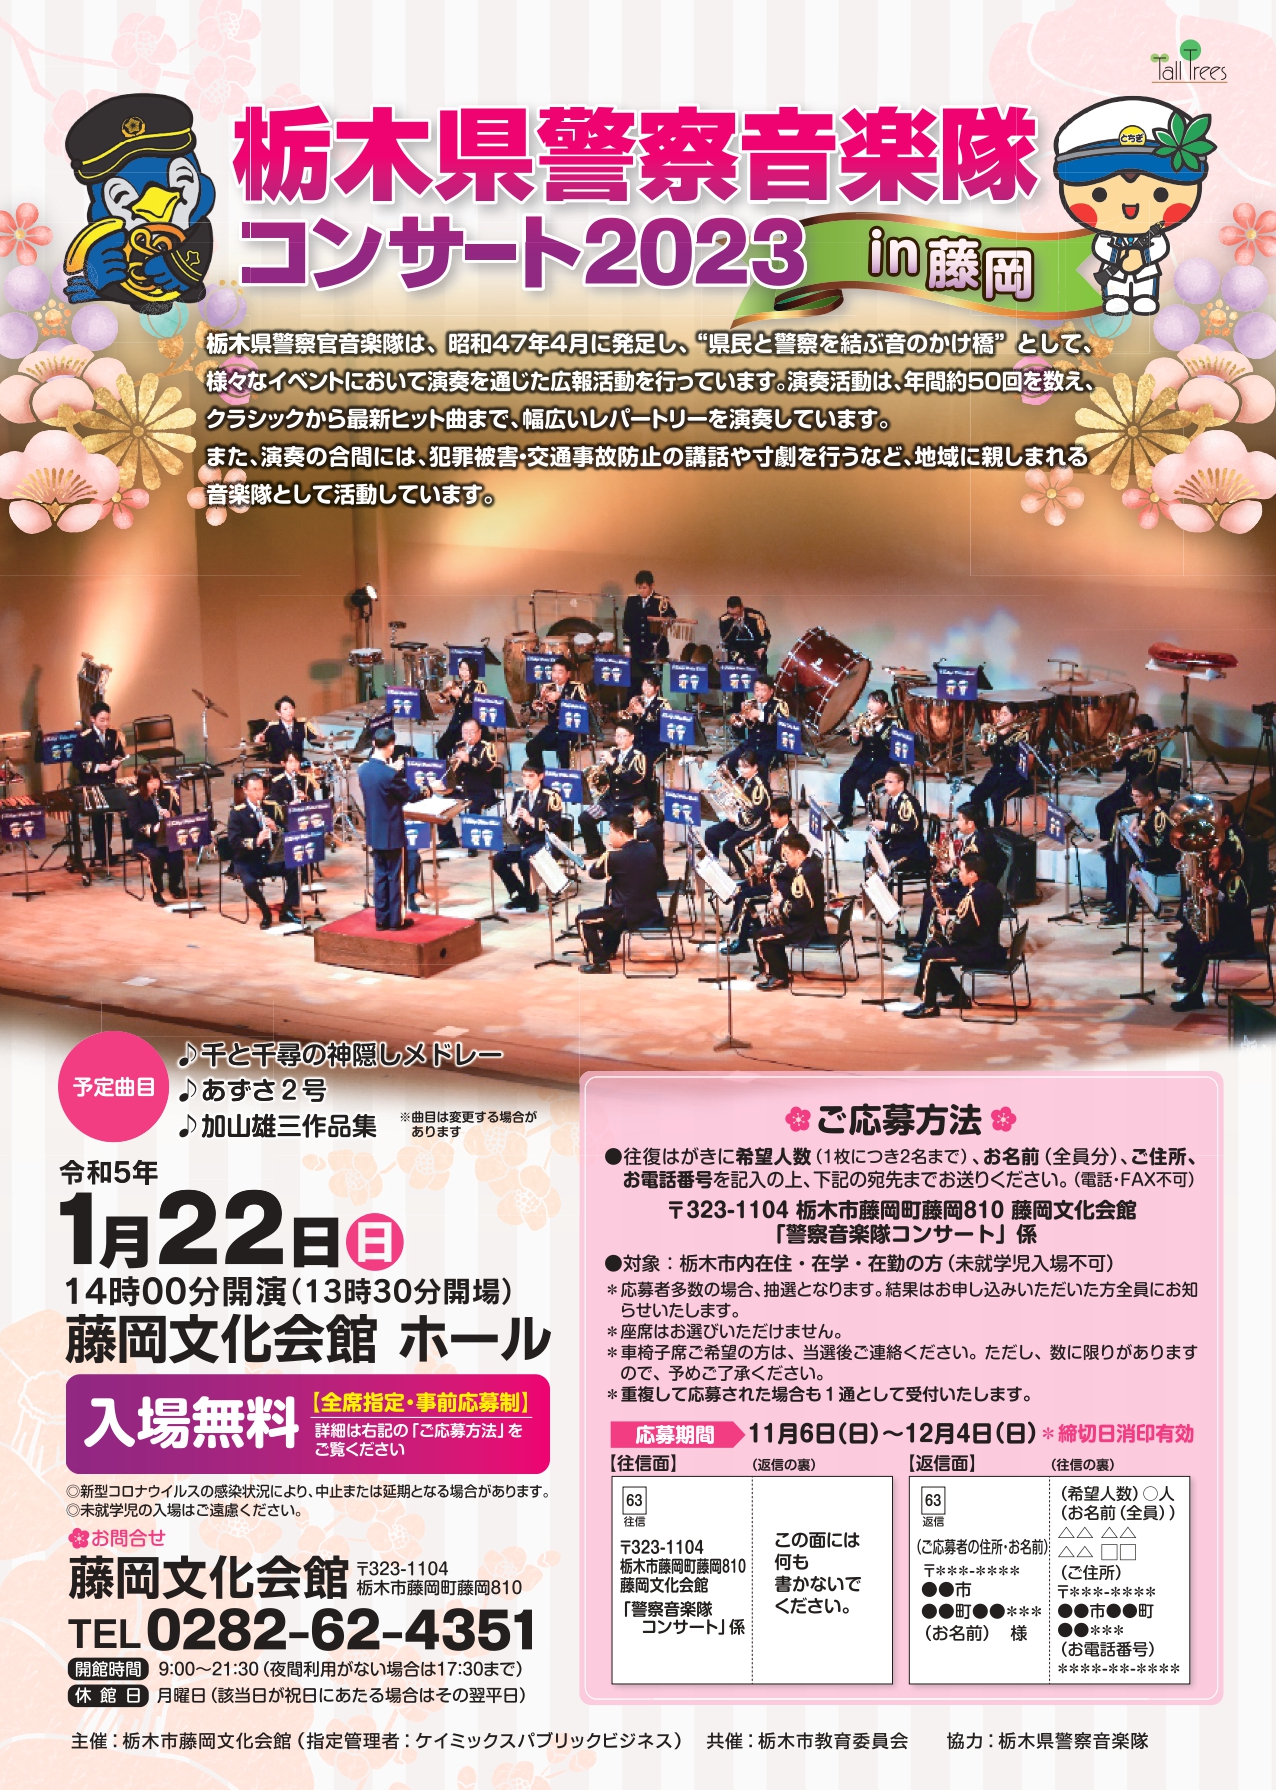 栃木県警察音楽隊コンサート2023 in 藤岡